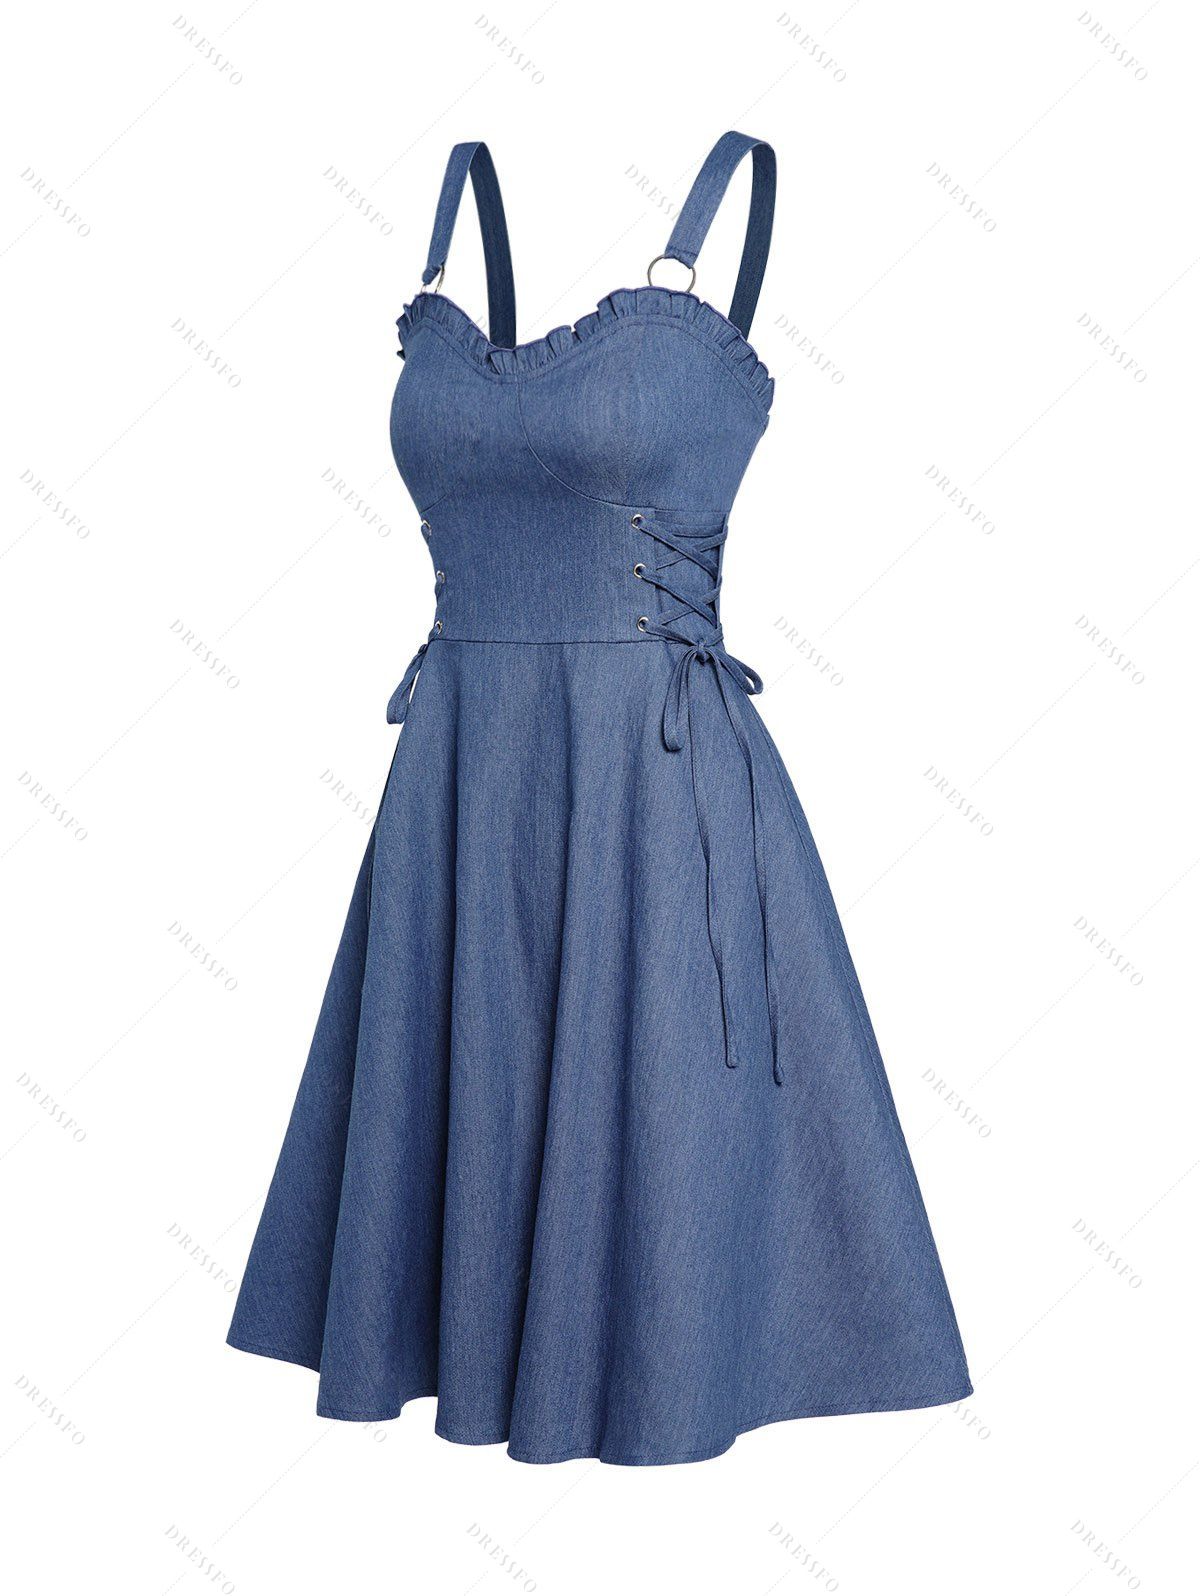 Dresslily Ruffle Hem Denim Dress Empire Waist Lace Up Sleeveless A Line Short Dress